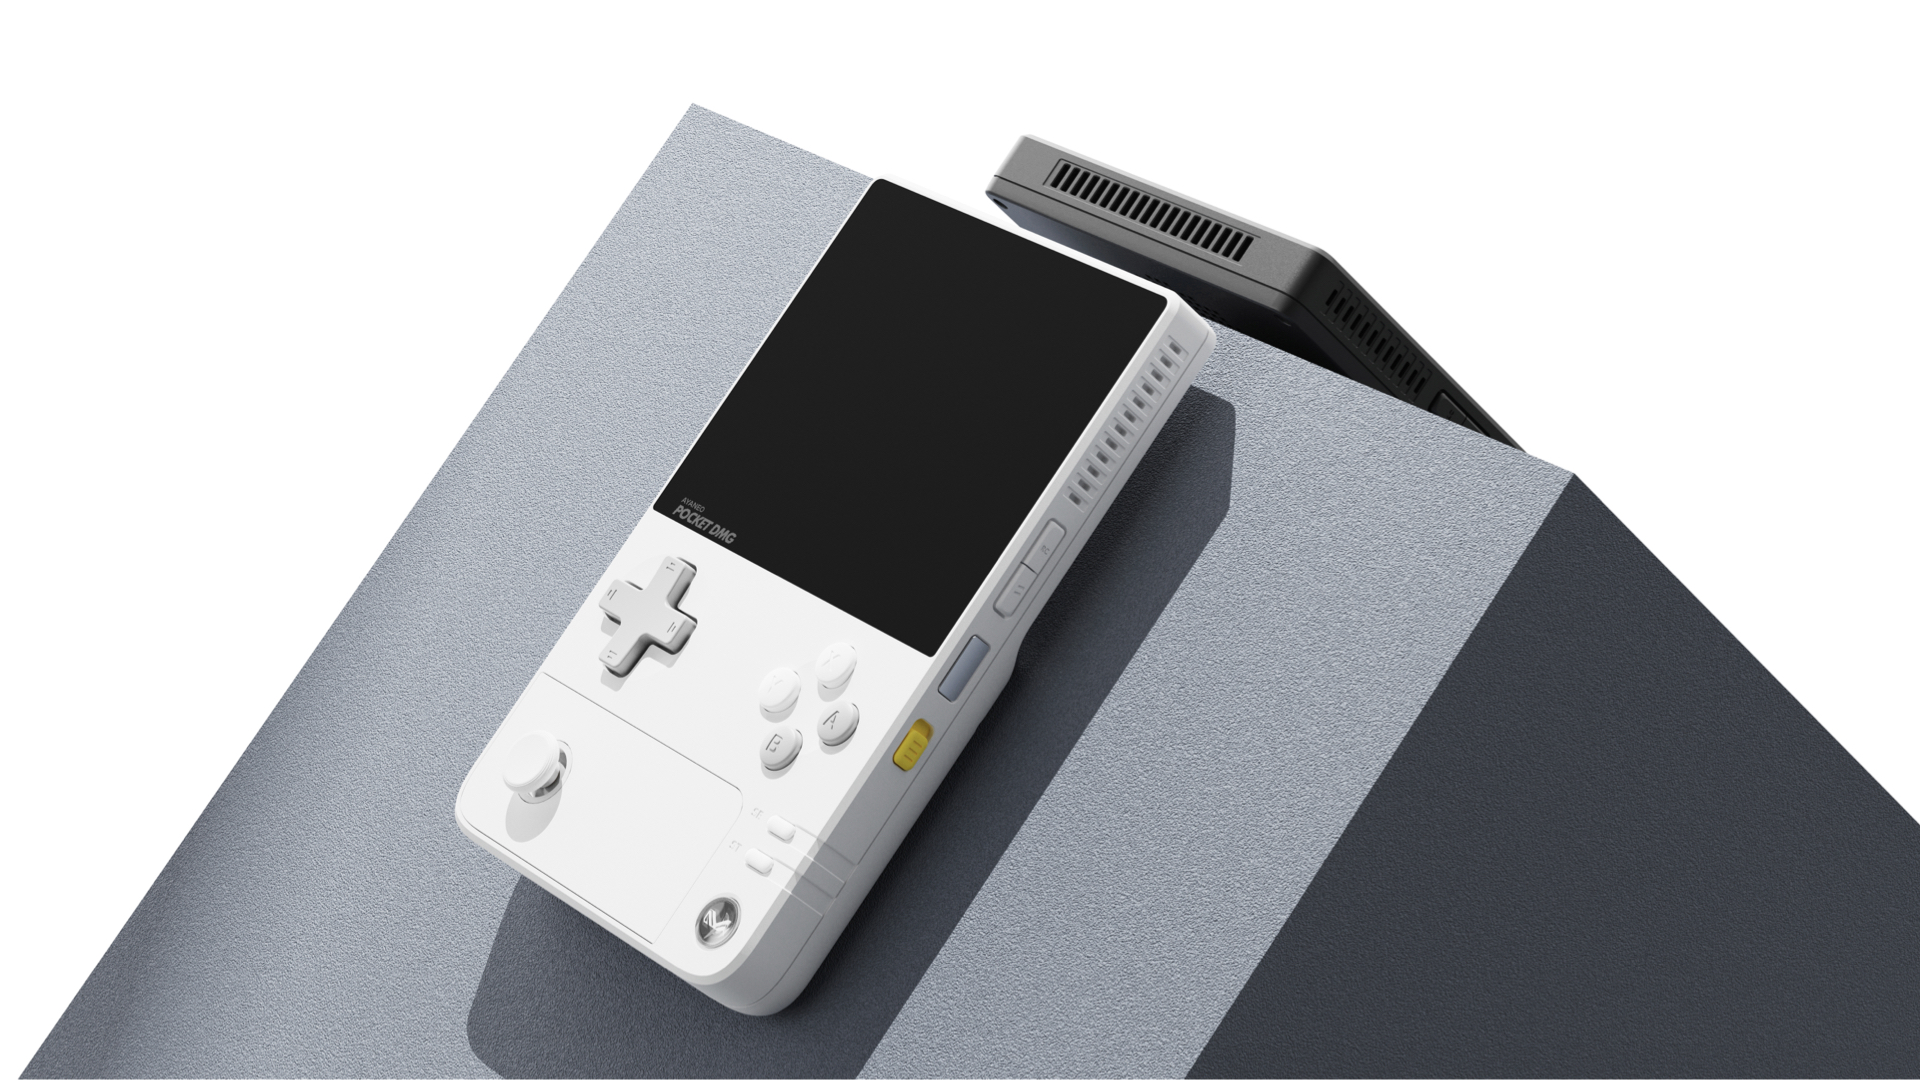 Pocket DMG et Pocket Micro : AYANEO annonce deux nouvelles consoles rétro avec de superbes écrans